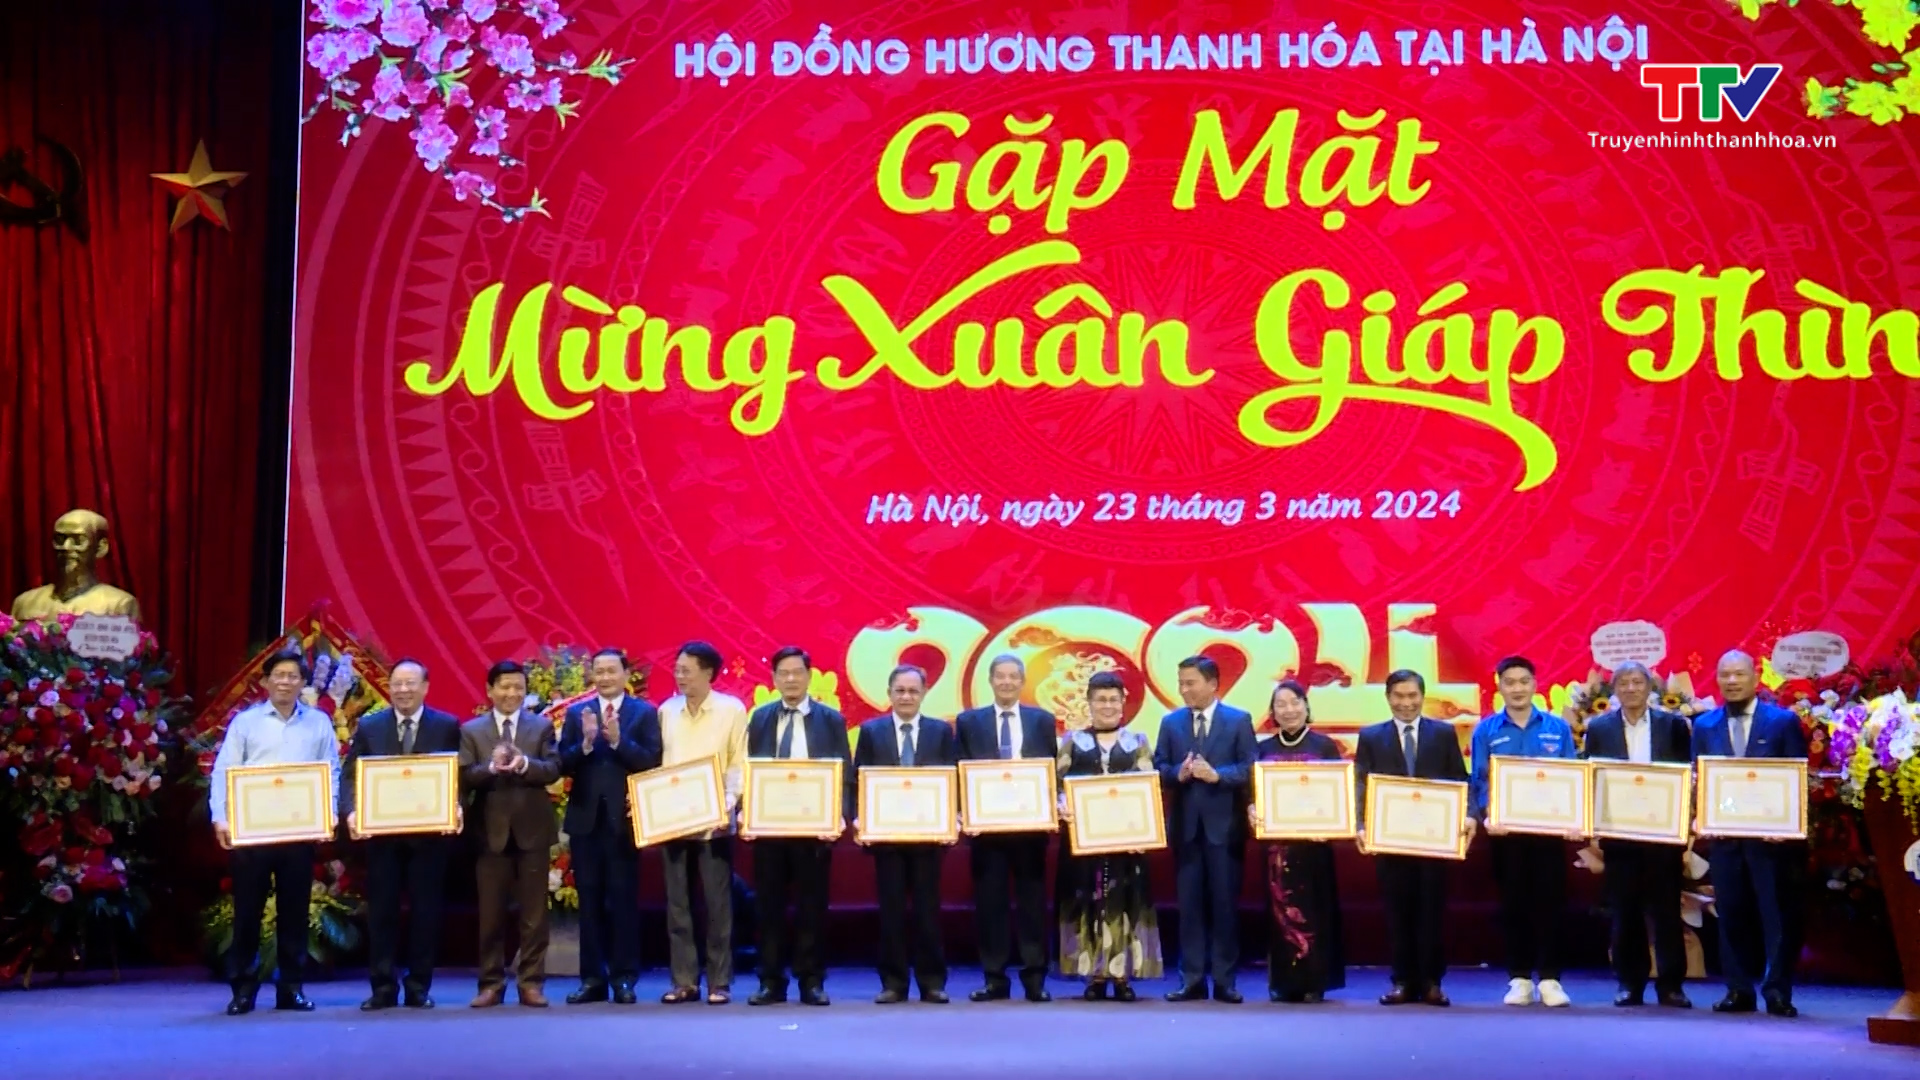 Hội đồng hương Thanh Hoá tại Hà Nội gặp mặt xuân Giáp Thìn 2024- Ảnh 5.